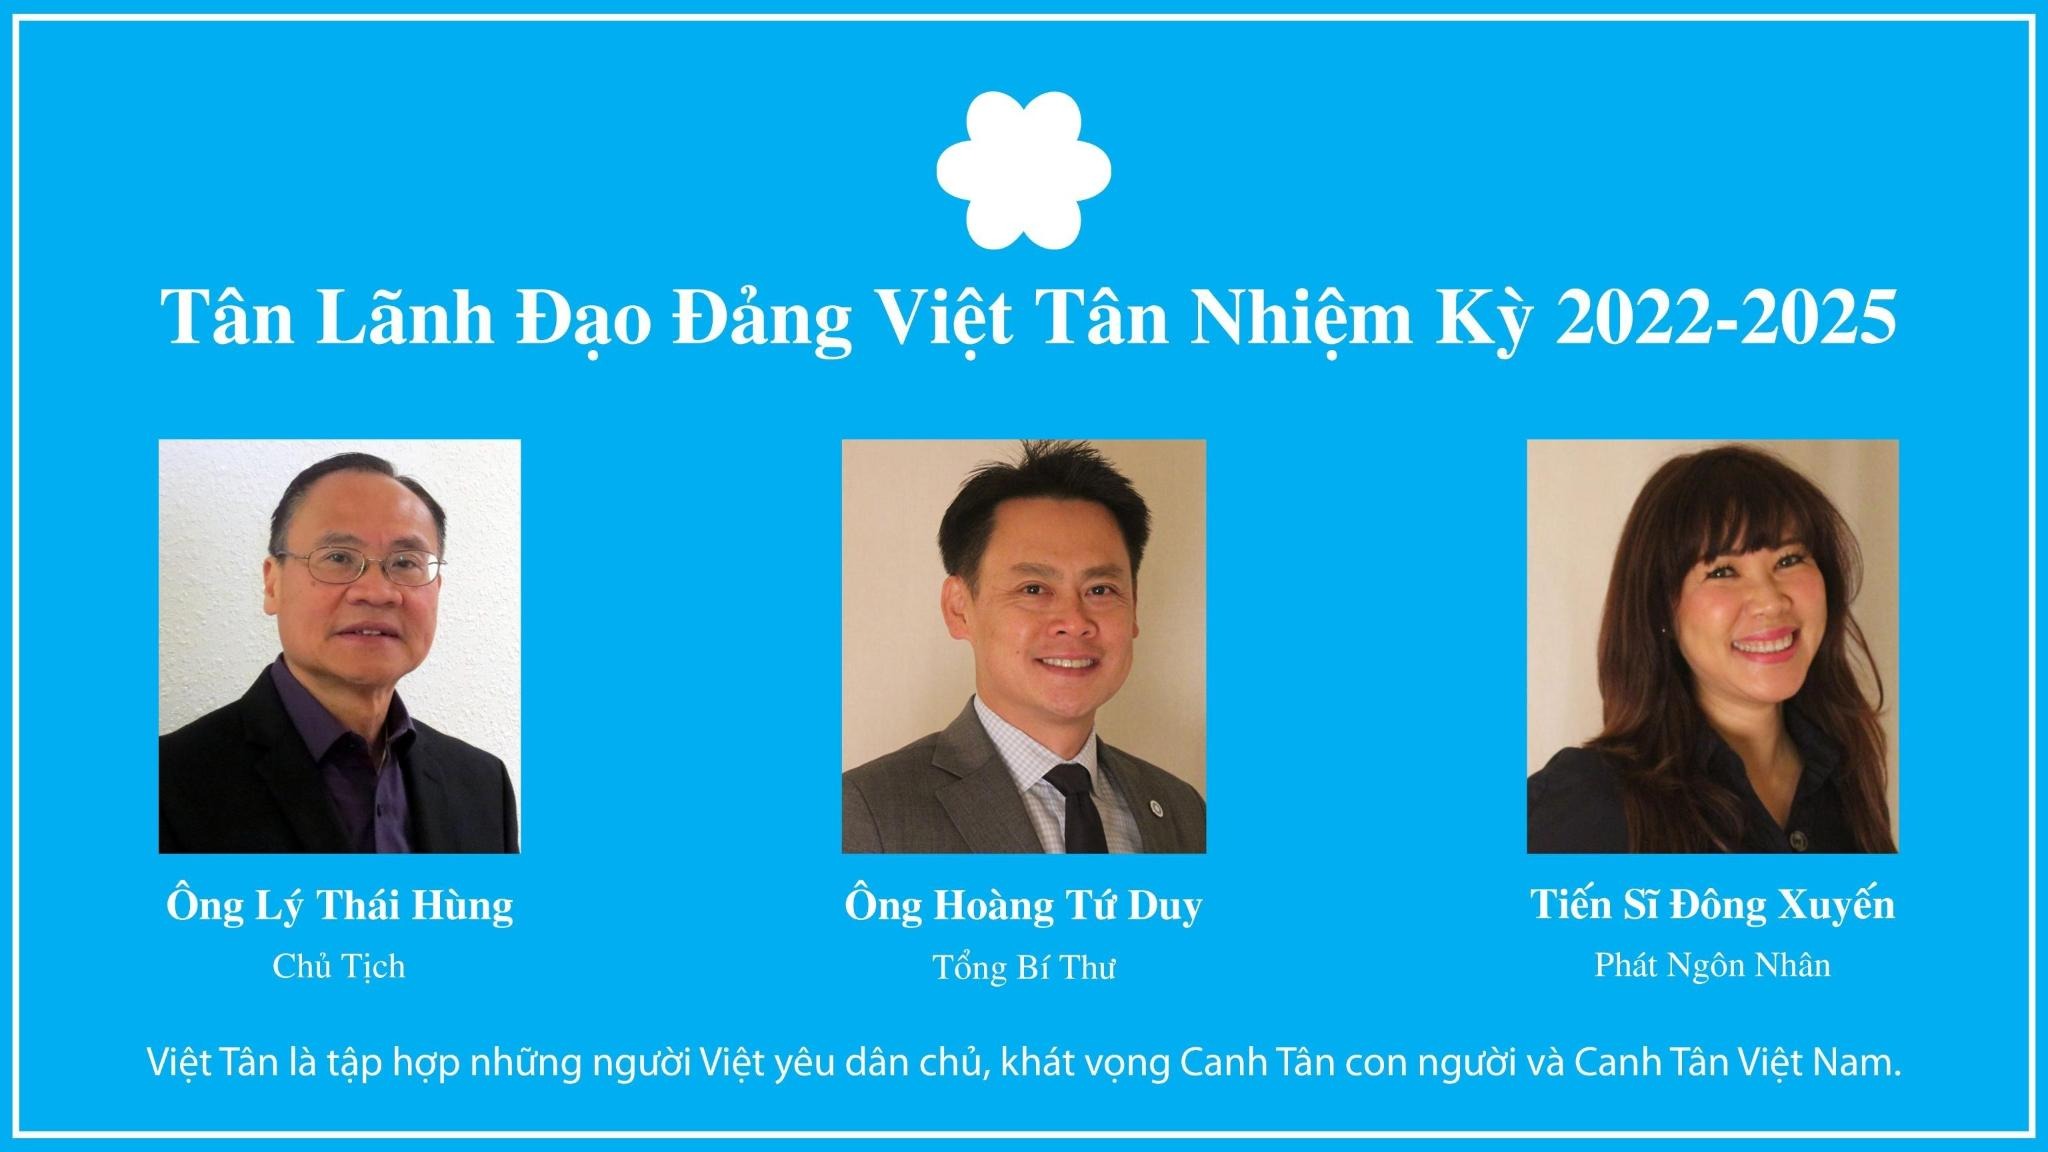 Tân Lãnh Đạo Đảng Việt Tân nhiệm kỳ 2022-2025. Ảnh: Việt Tân